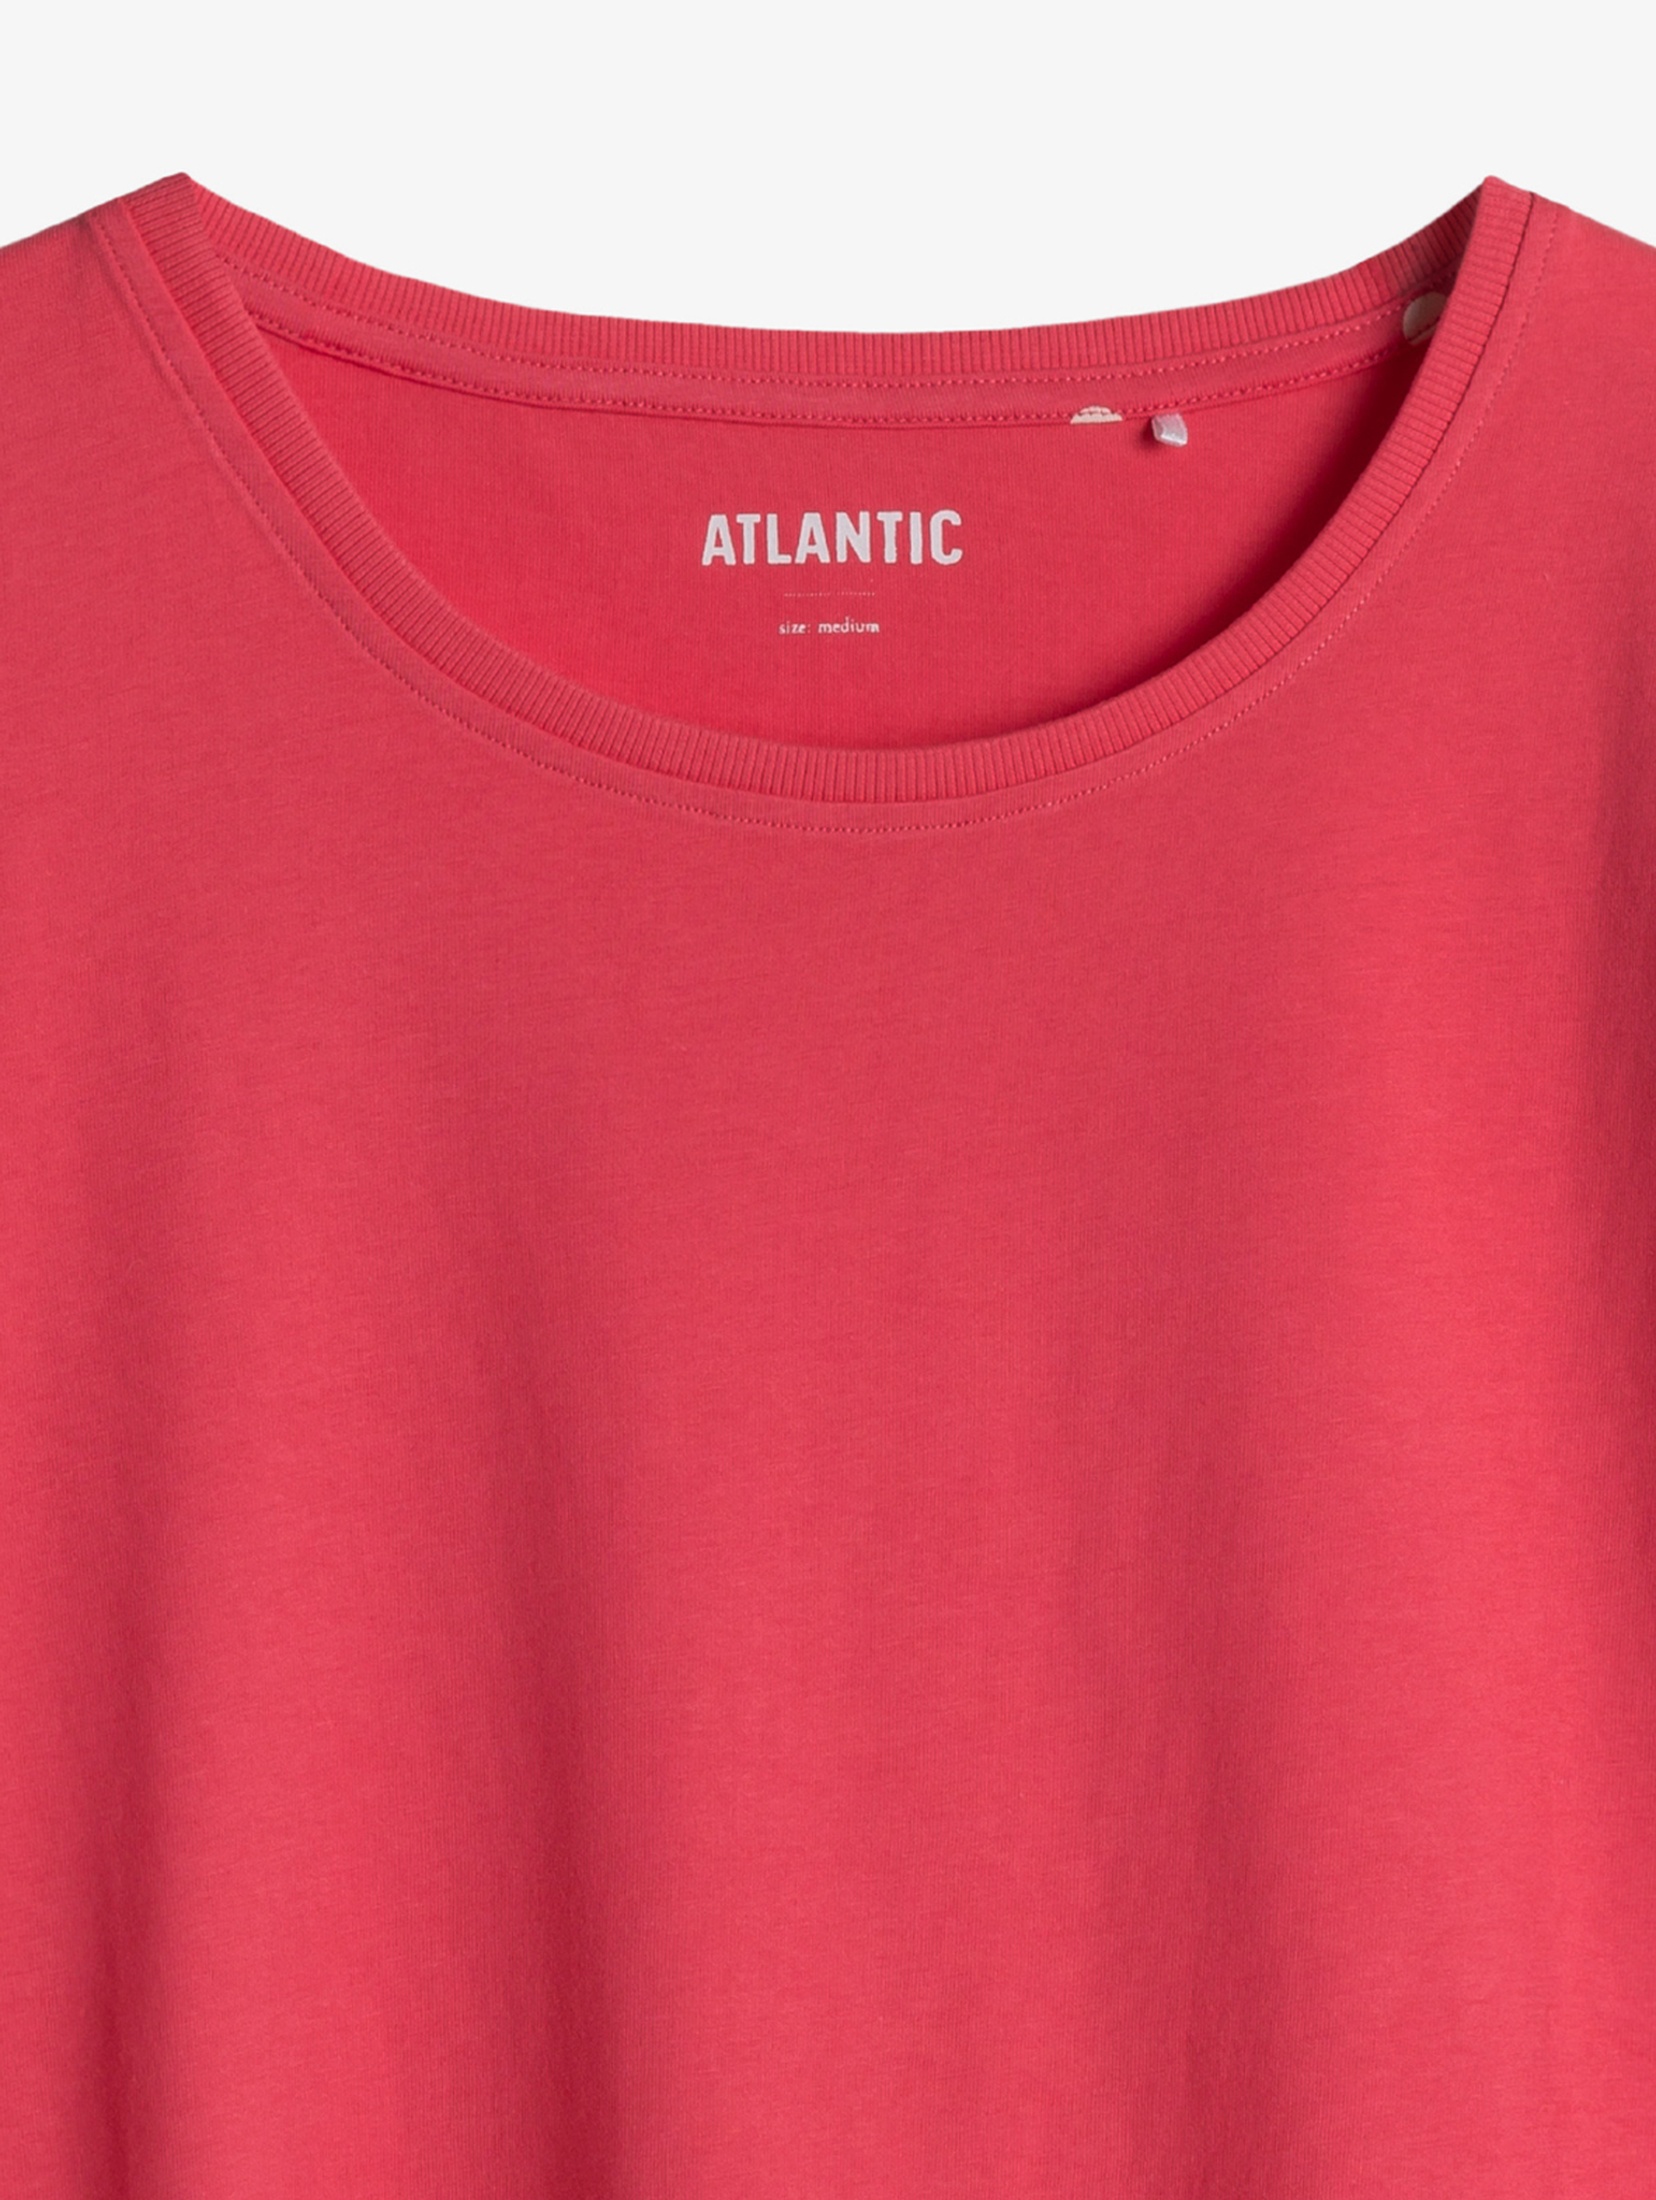 Piżama damska dzianinowa - koralowy t-shirt i spodenki 3/4 - Atlantic